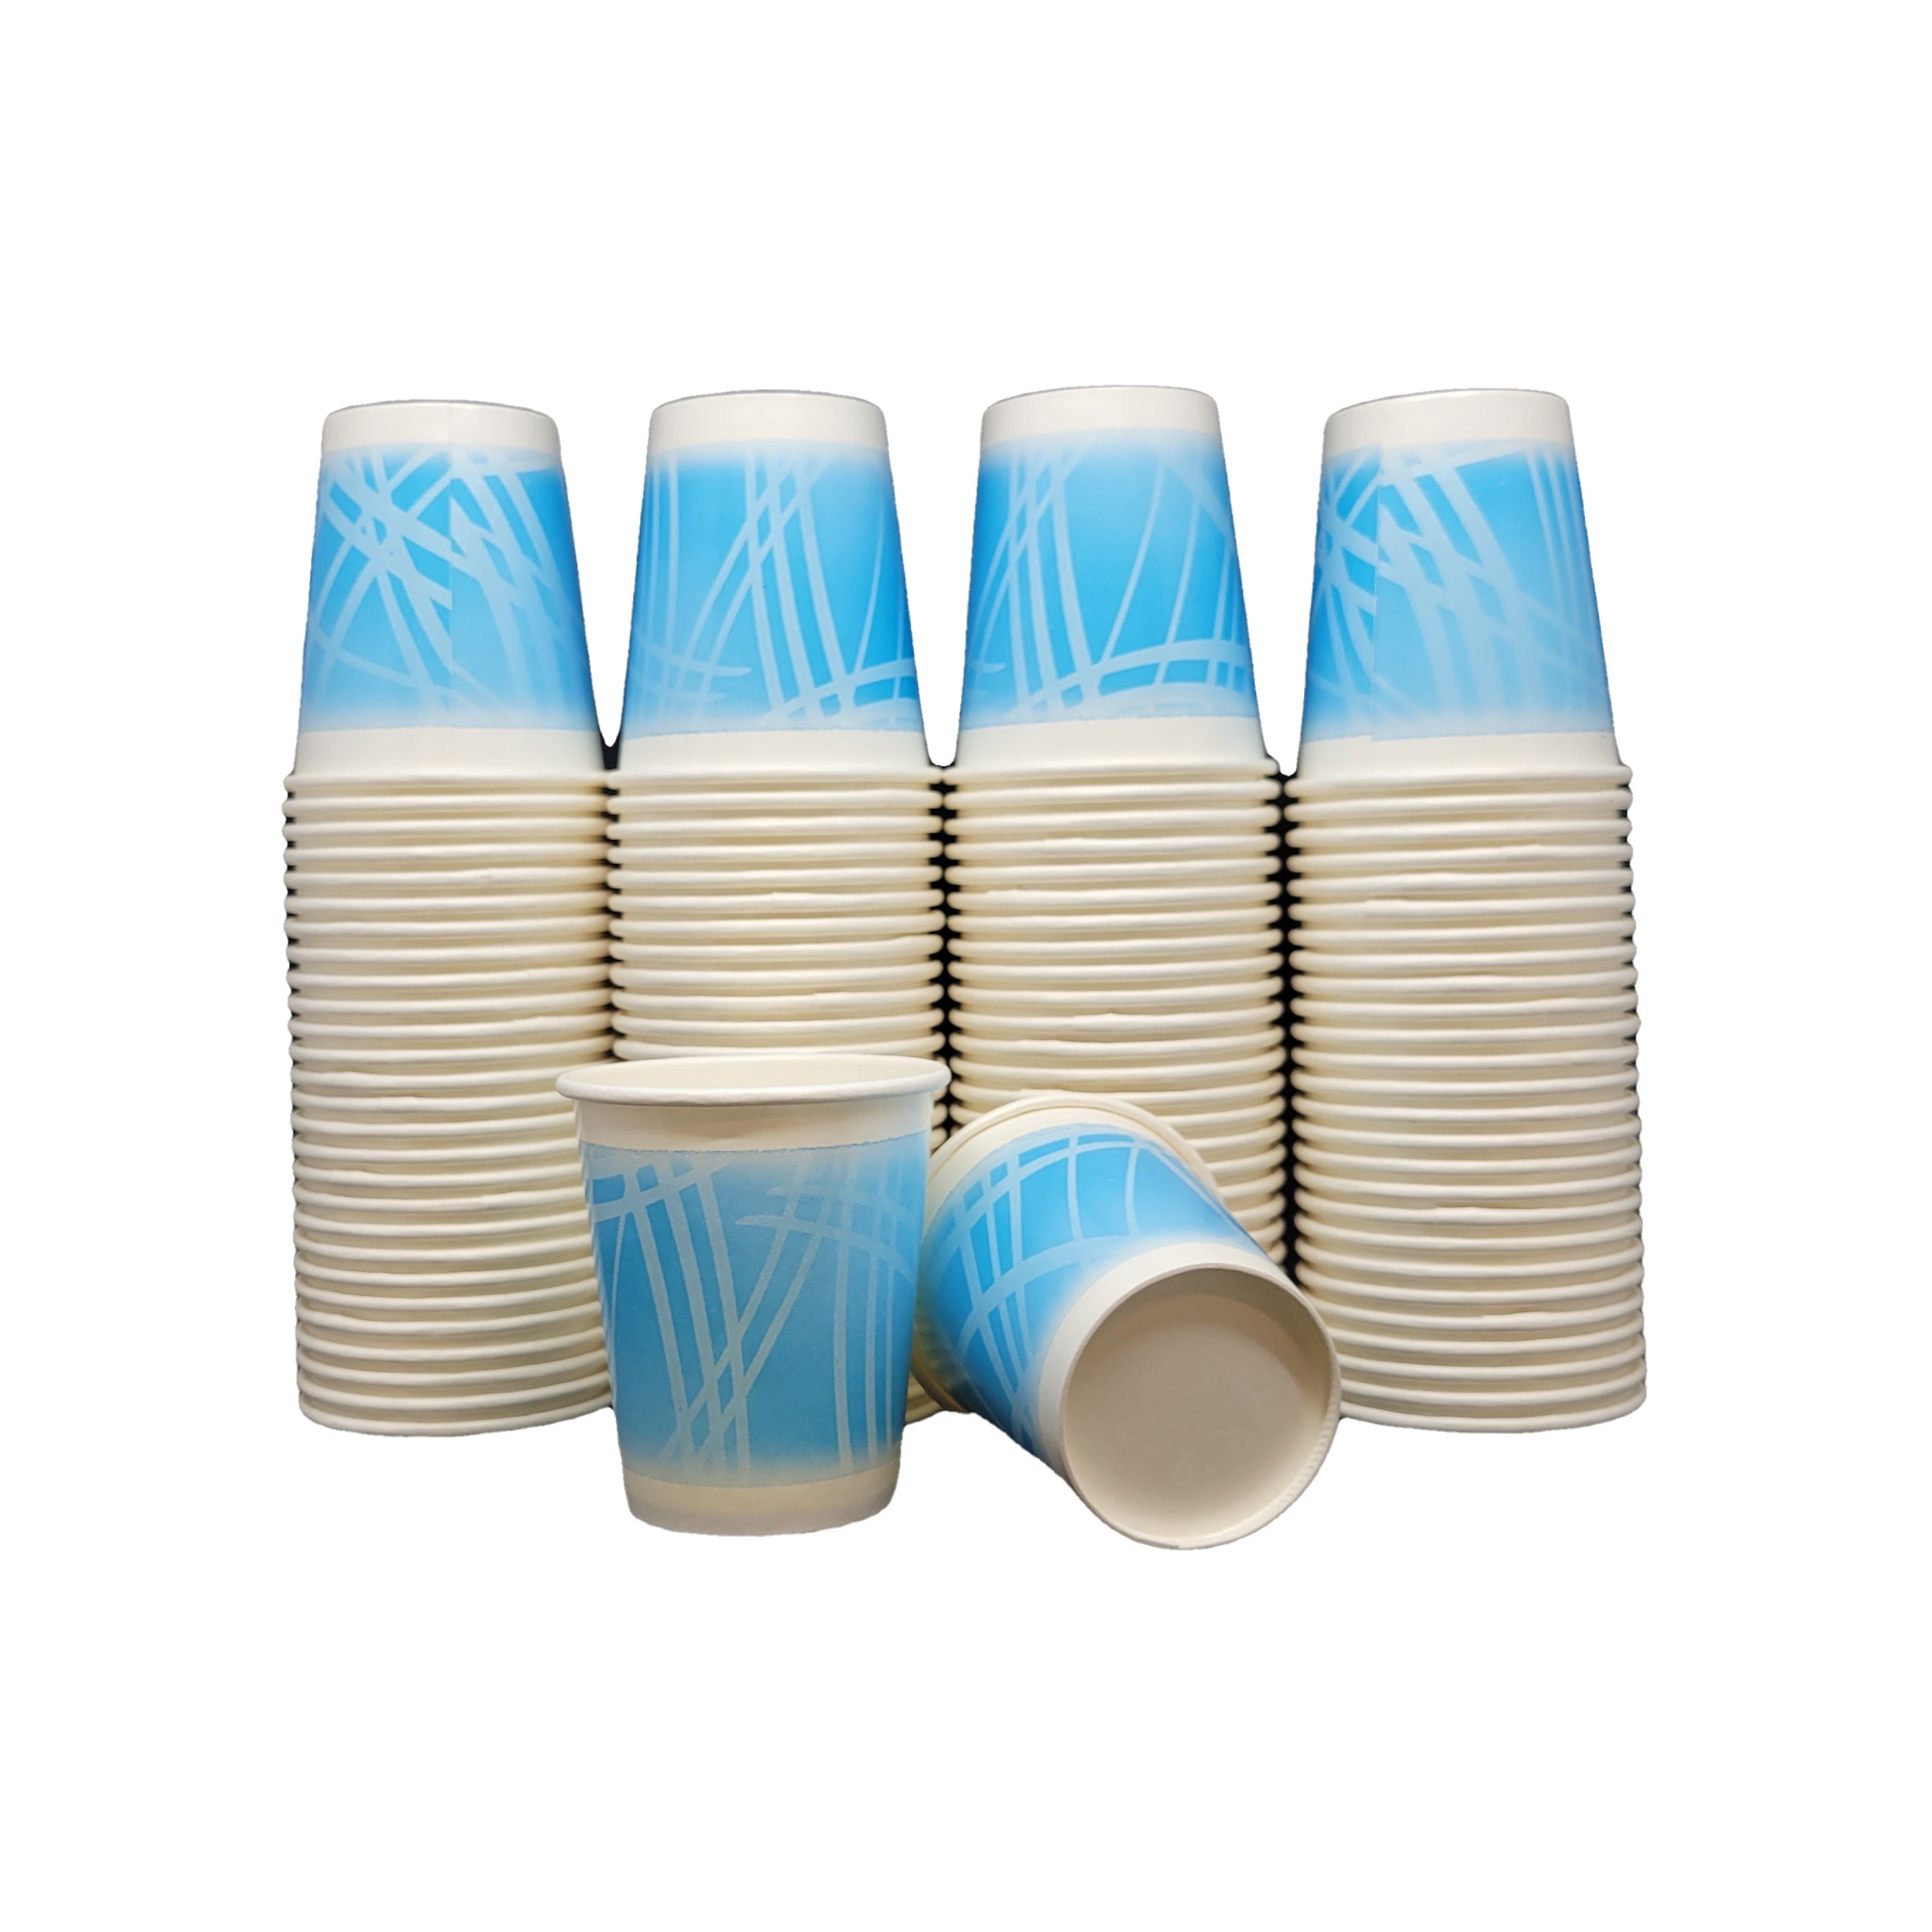 5 oz. Paper Cups 500/bag